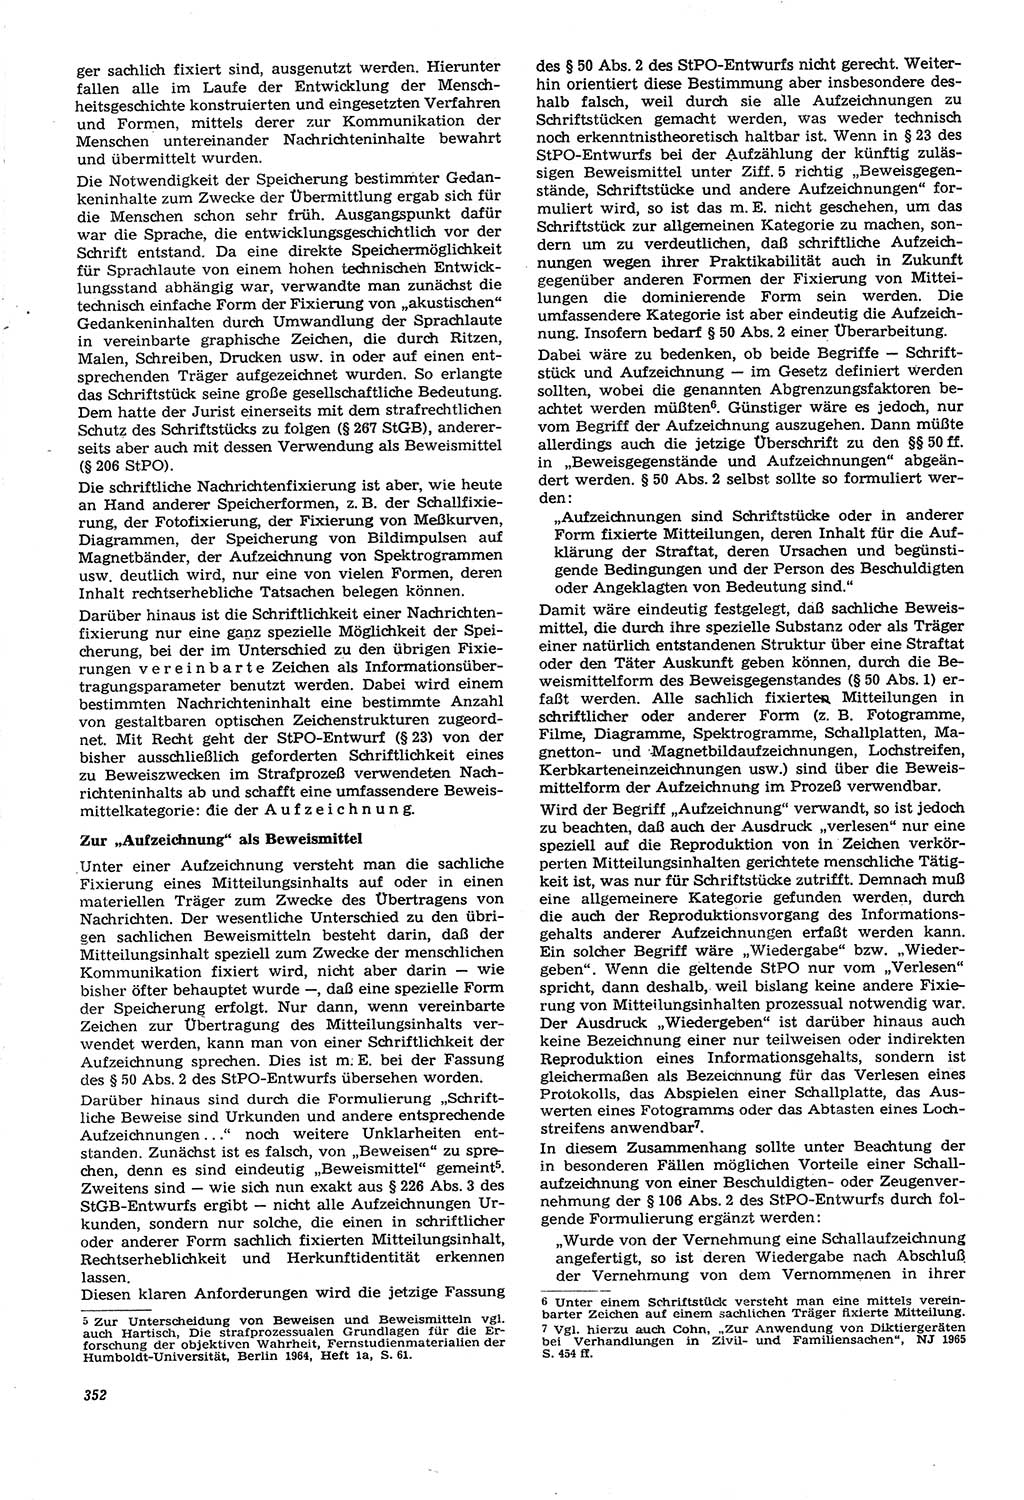 Neue Justiz (NJ), Zeitschrift für Recht und Rechtswissenschaft [Deutsche Demokratische Republik (DDR)], 21. Jahrgang 1967, Seite 352 (NJ DDR 1967, S. 352)